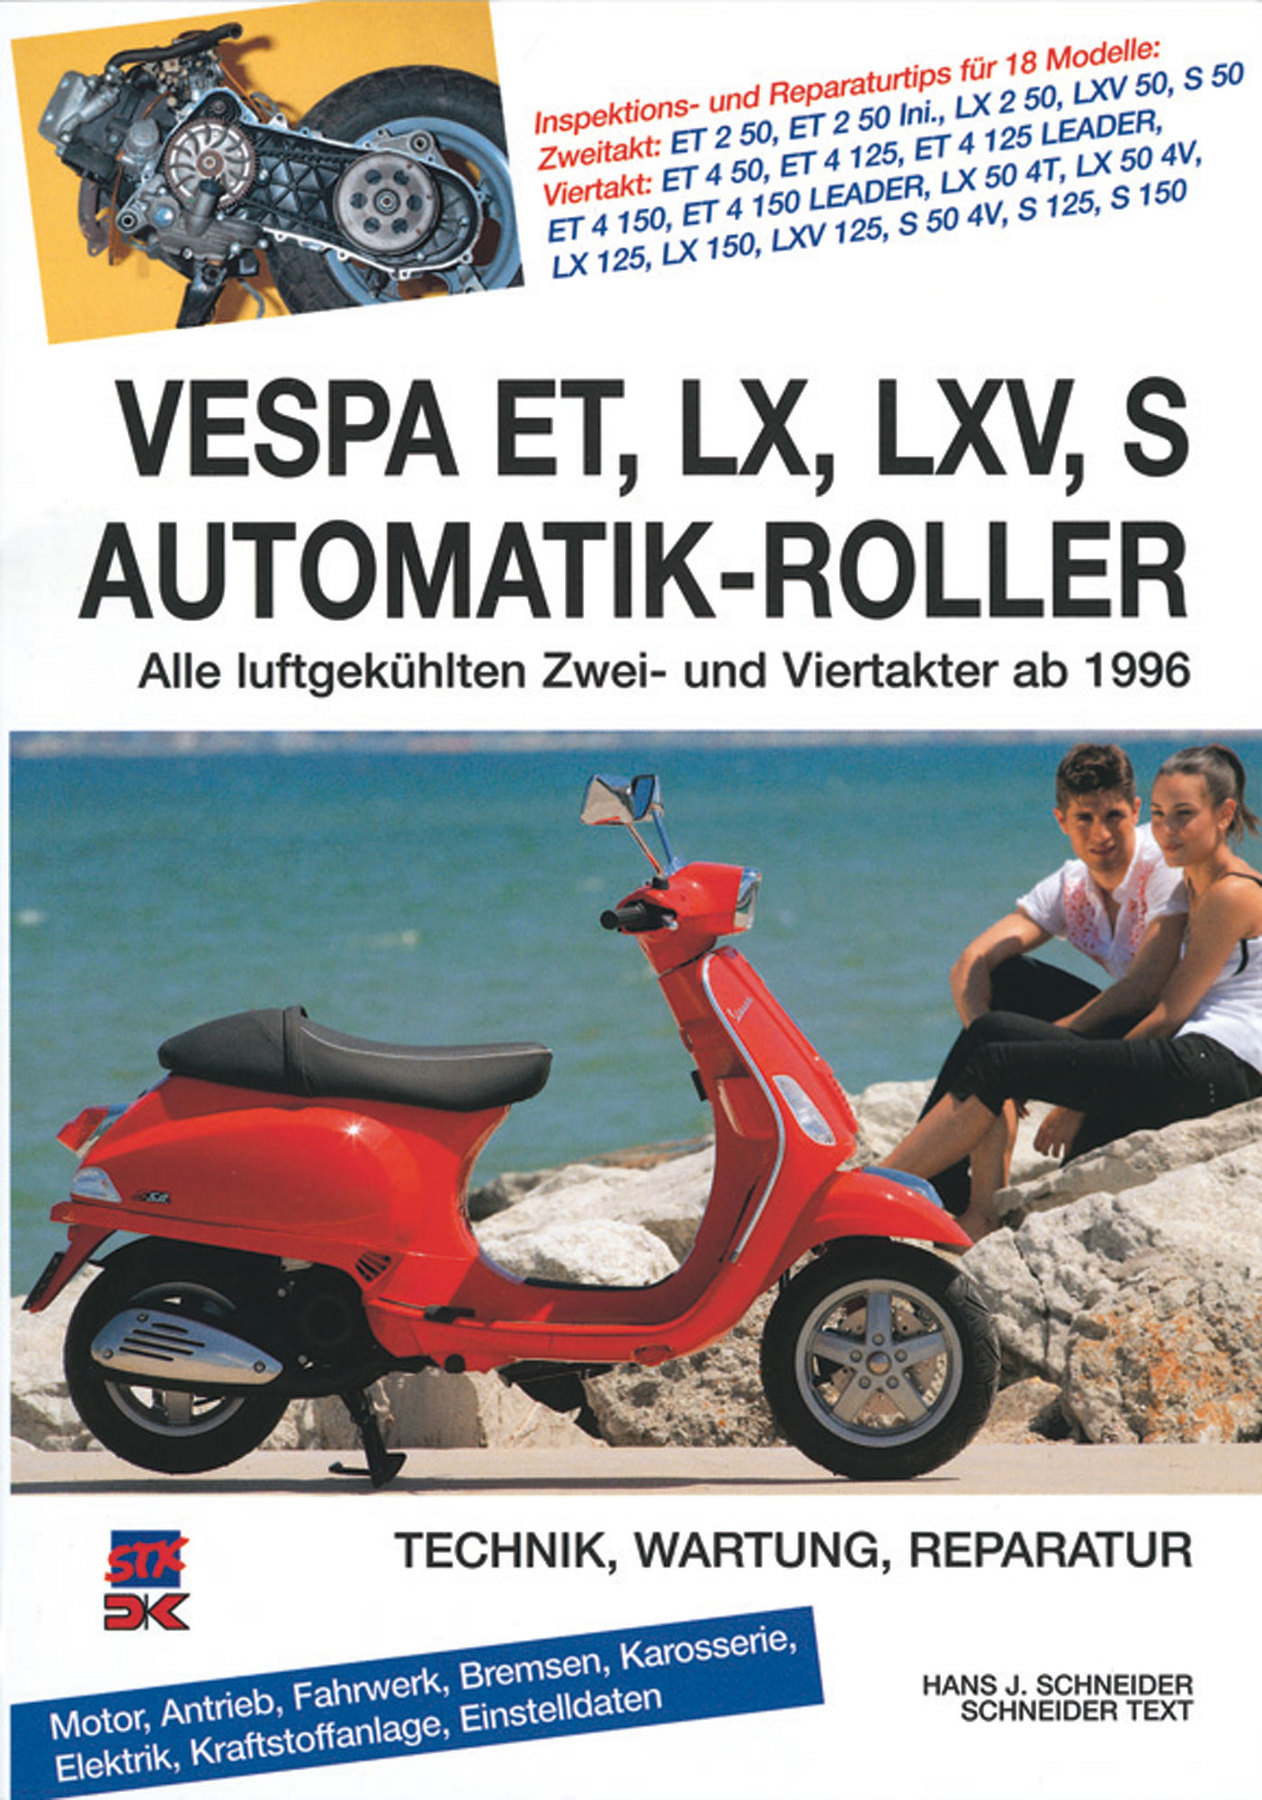 Обзор мотоцикла Vespa ET2 50 2001: технические характеристики и особенности